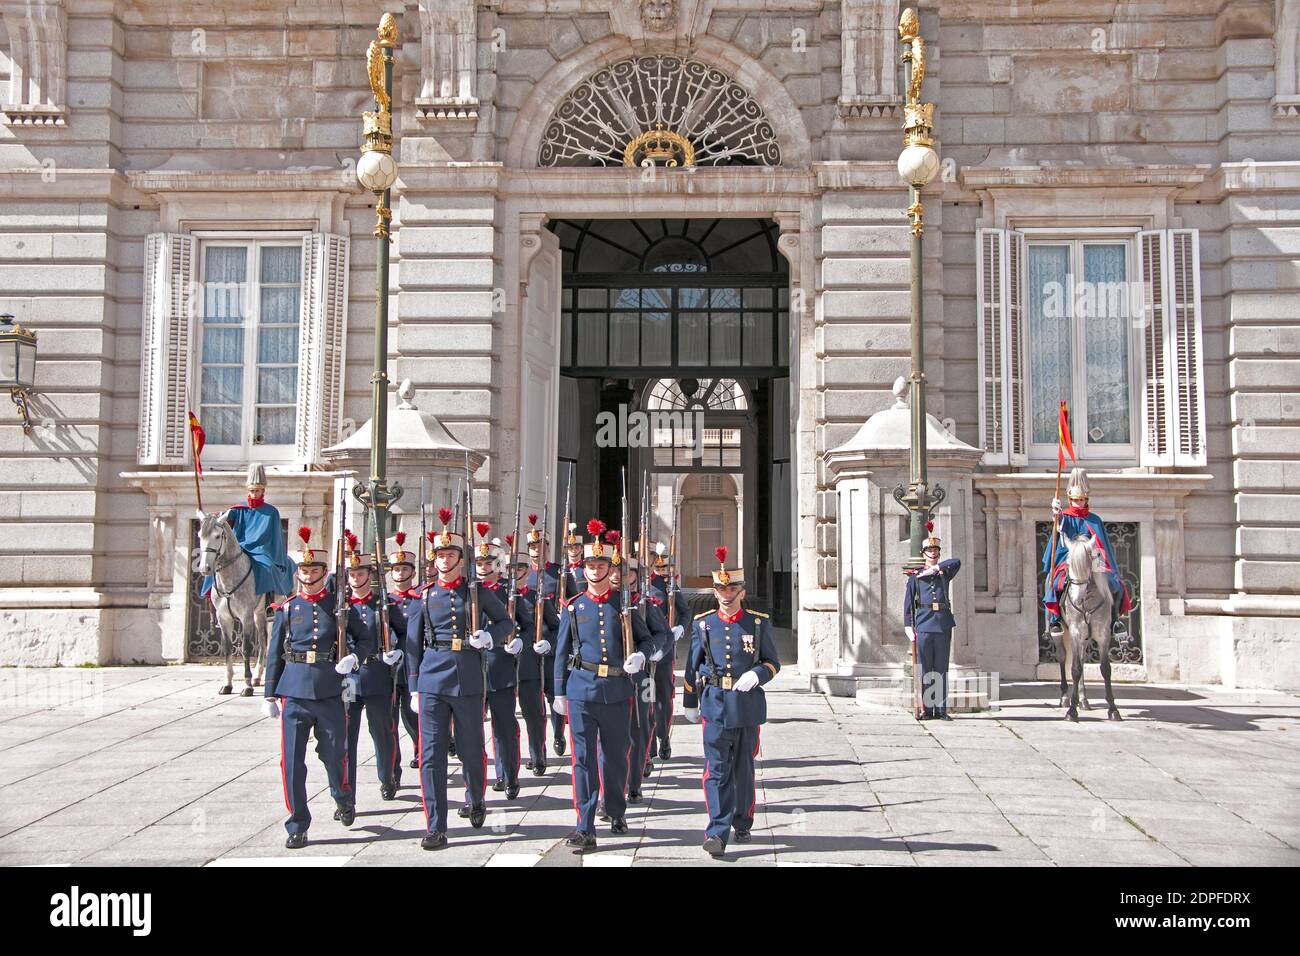 Palacio de guardia, cambio de guardia, Madrid, España Foto de stock